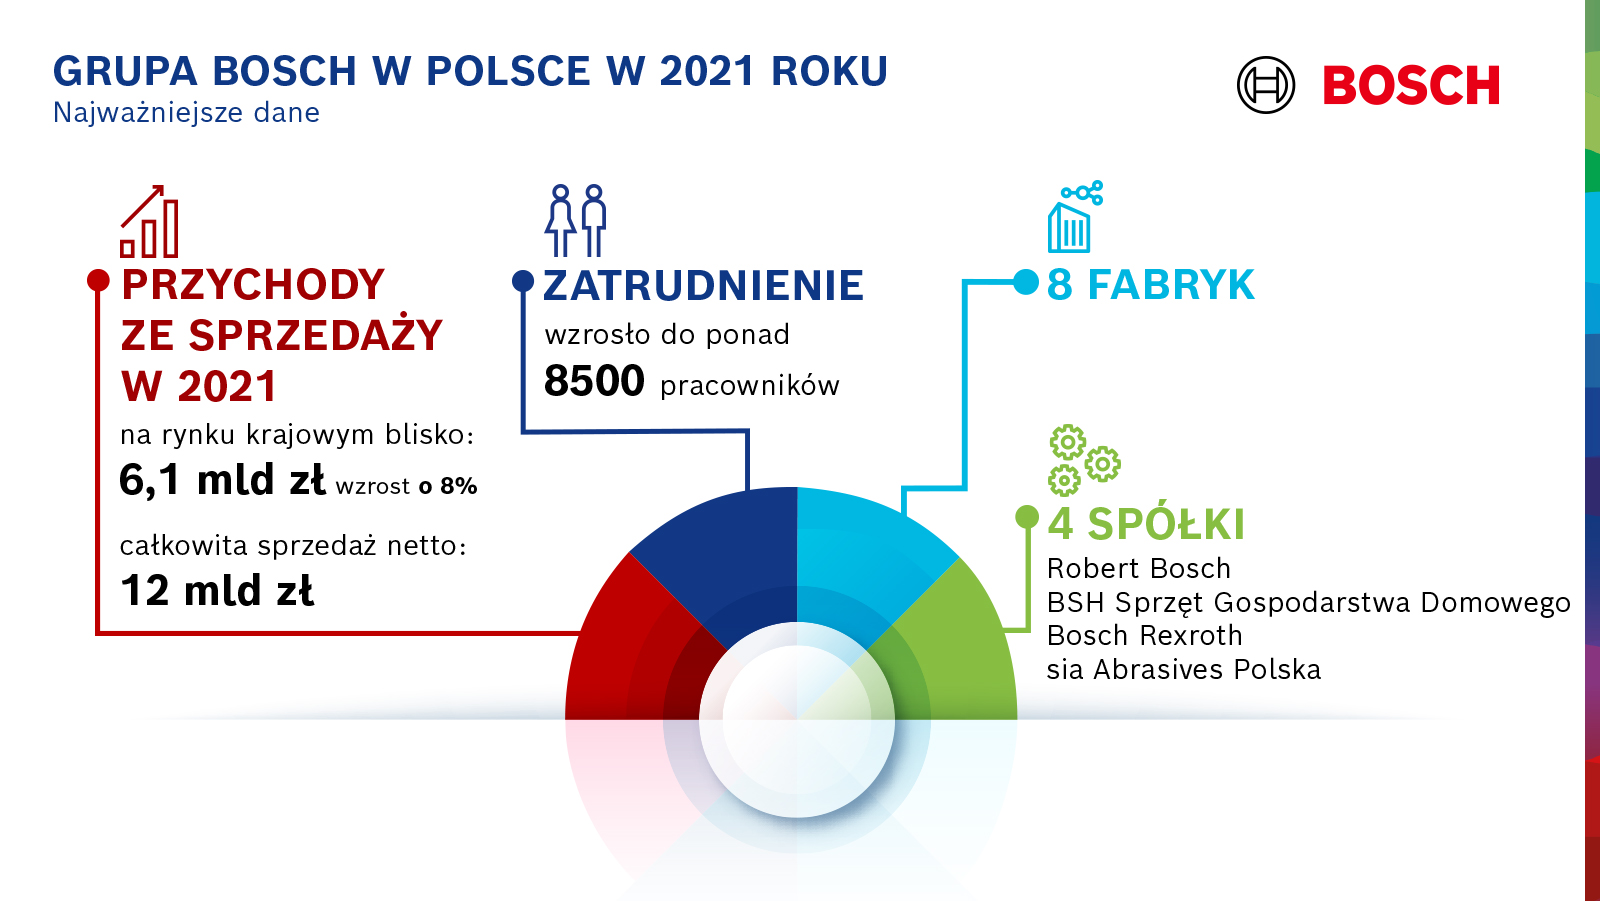 Bosch z solidnym wzrostem w Polsce w pełnym wyzwań, drugim roku pandemii